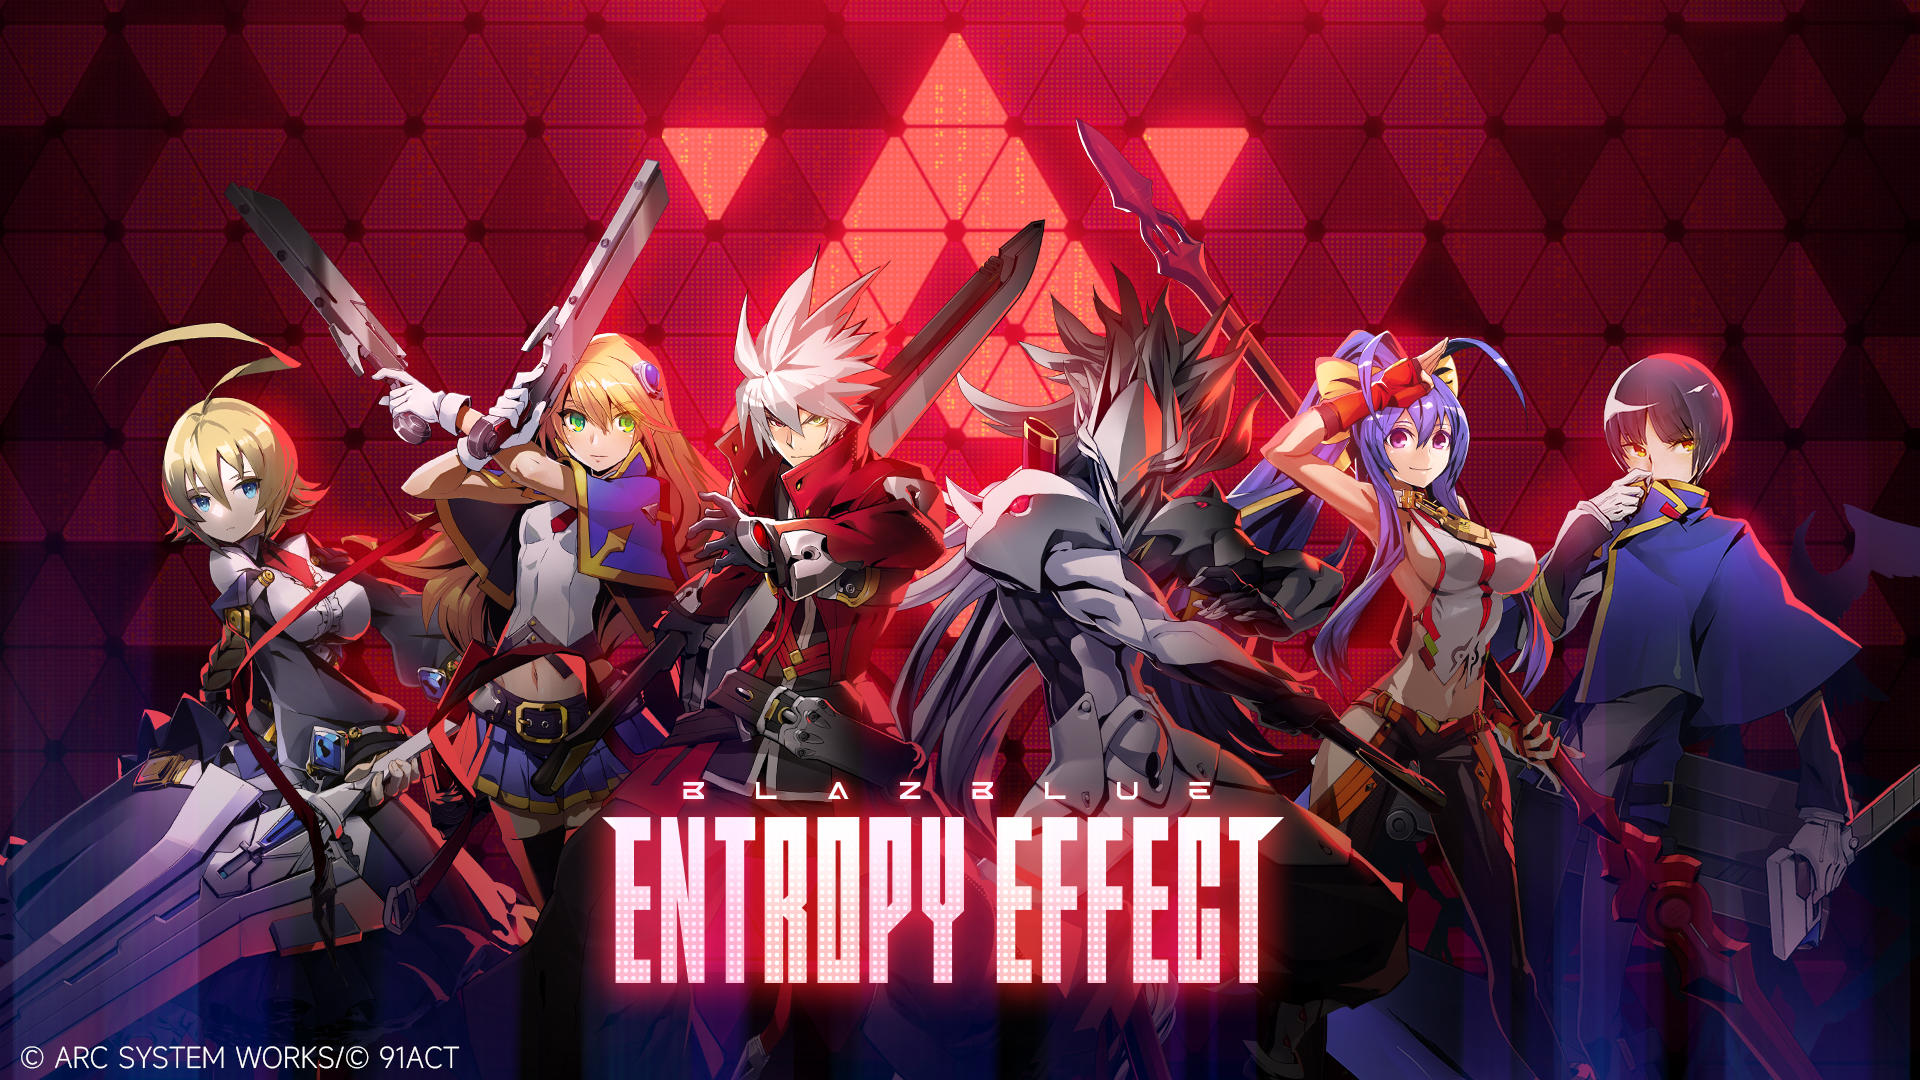 Banner of BlazBlue Entropy Effect 